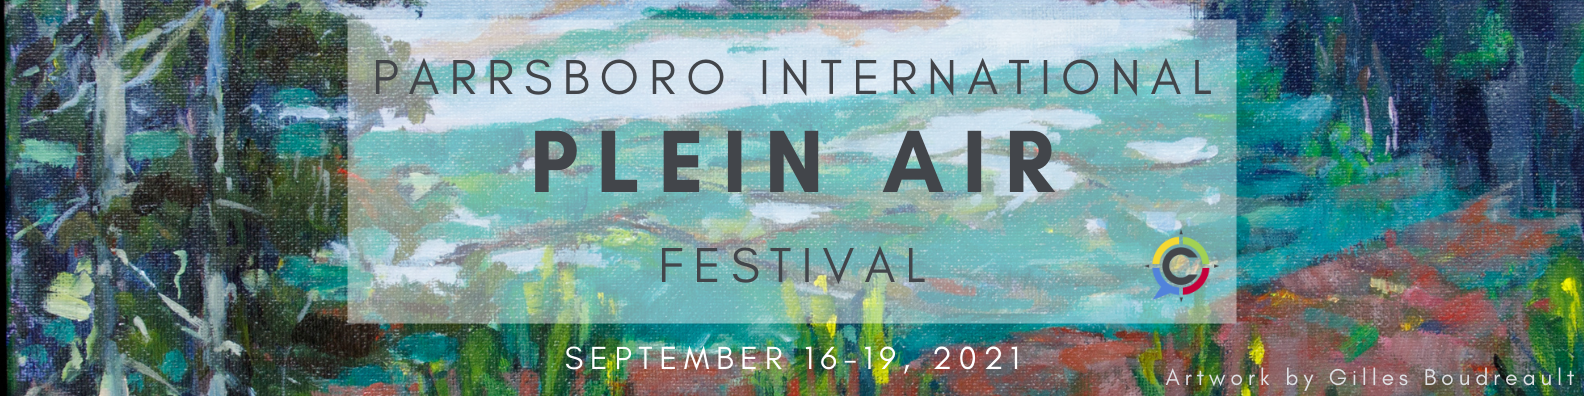 Parrsboro International Plein Air Festival, September 16-19, 2021